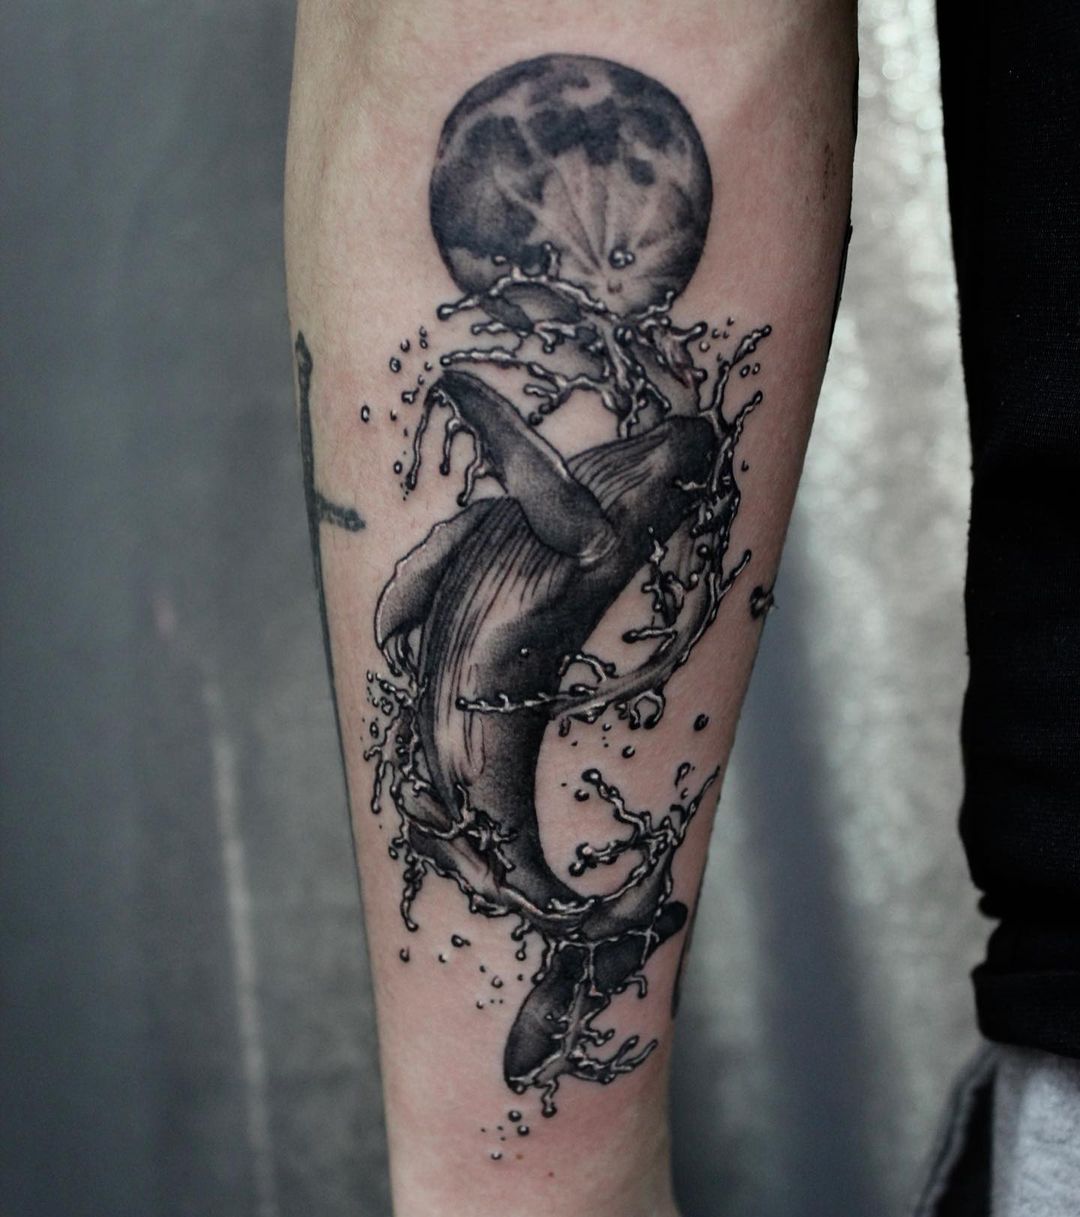 Whale tattoo by tattooist ryu hwa